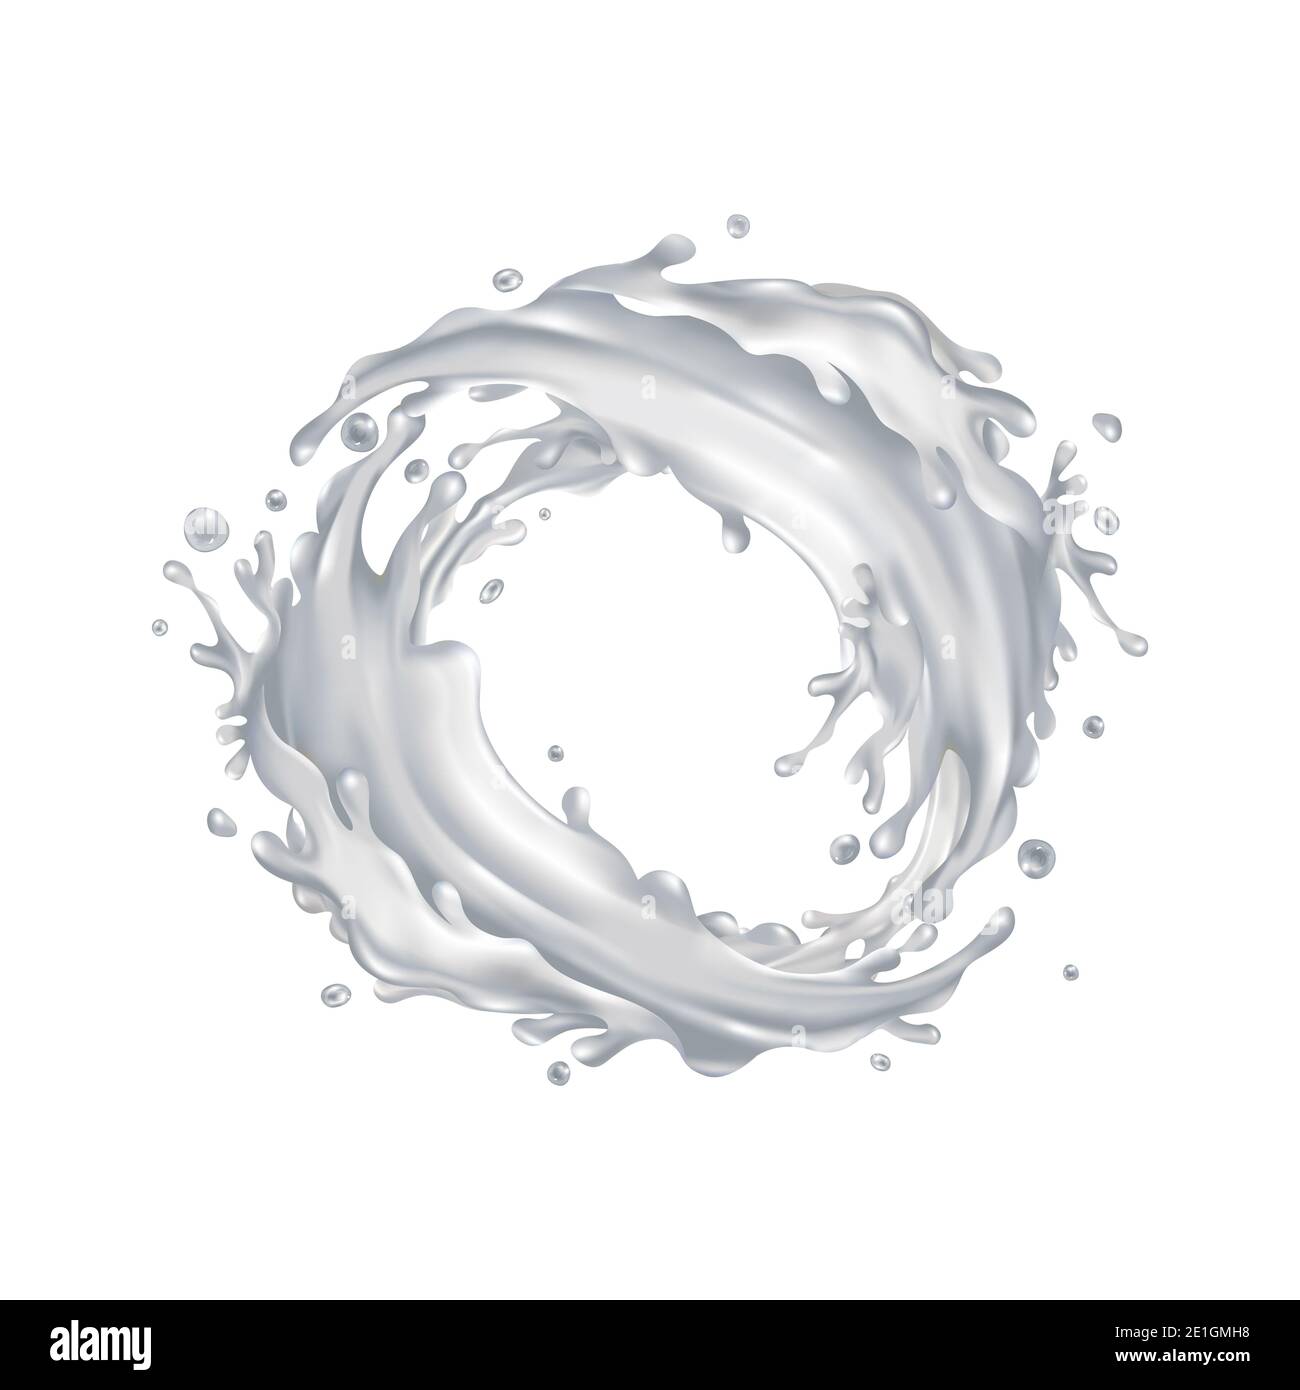 Milk splashes circle on a white background Stock Photo